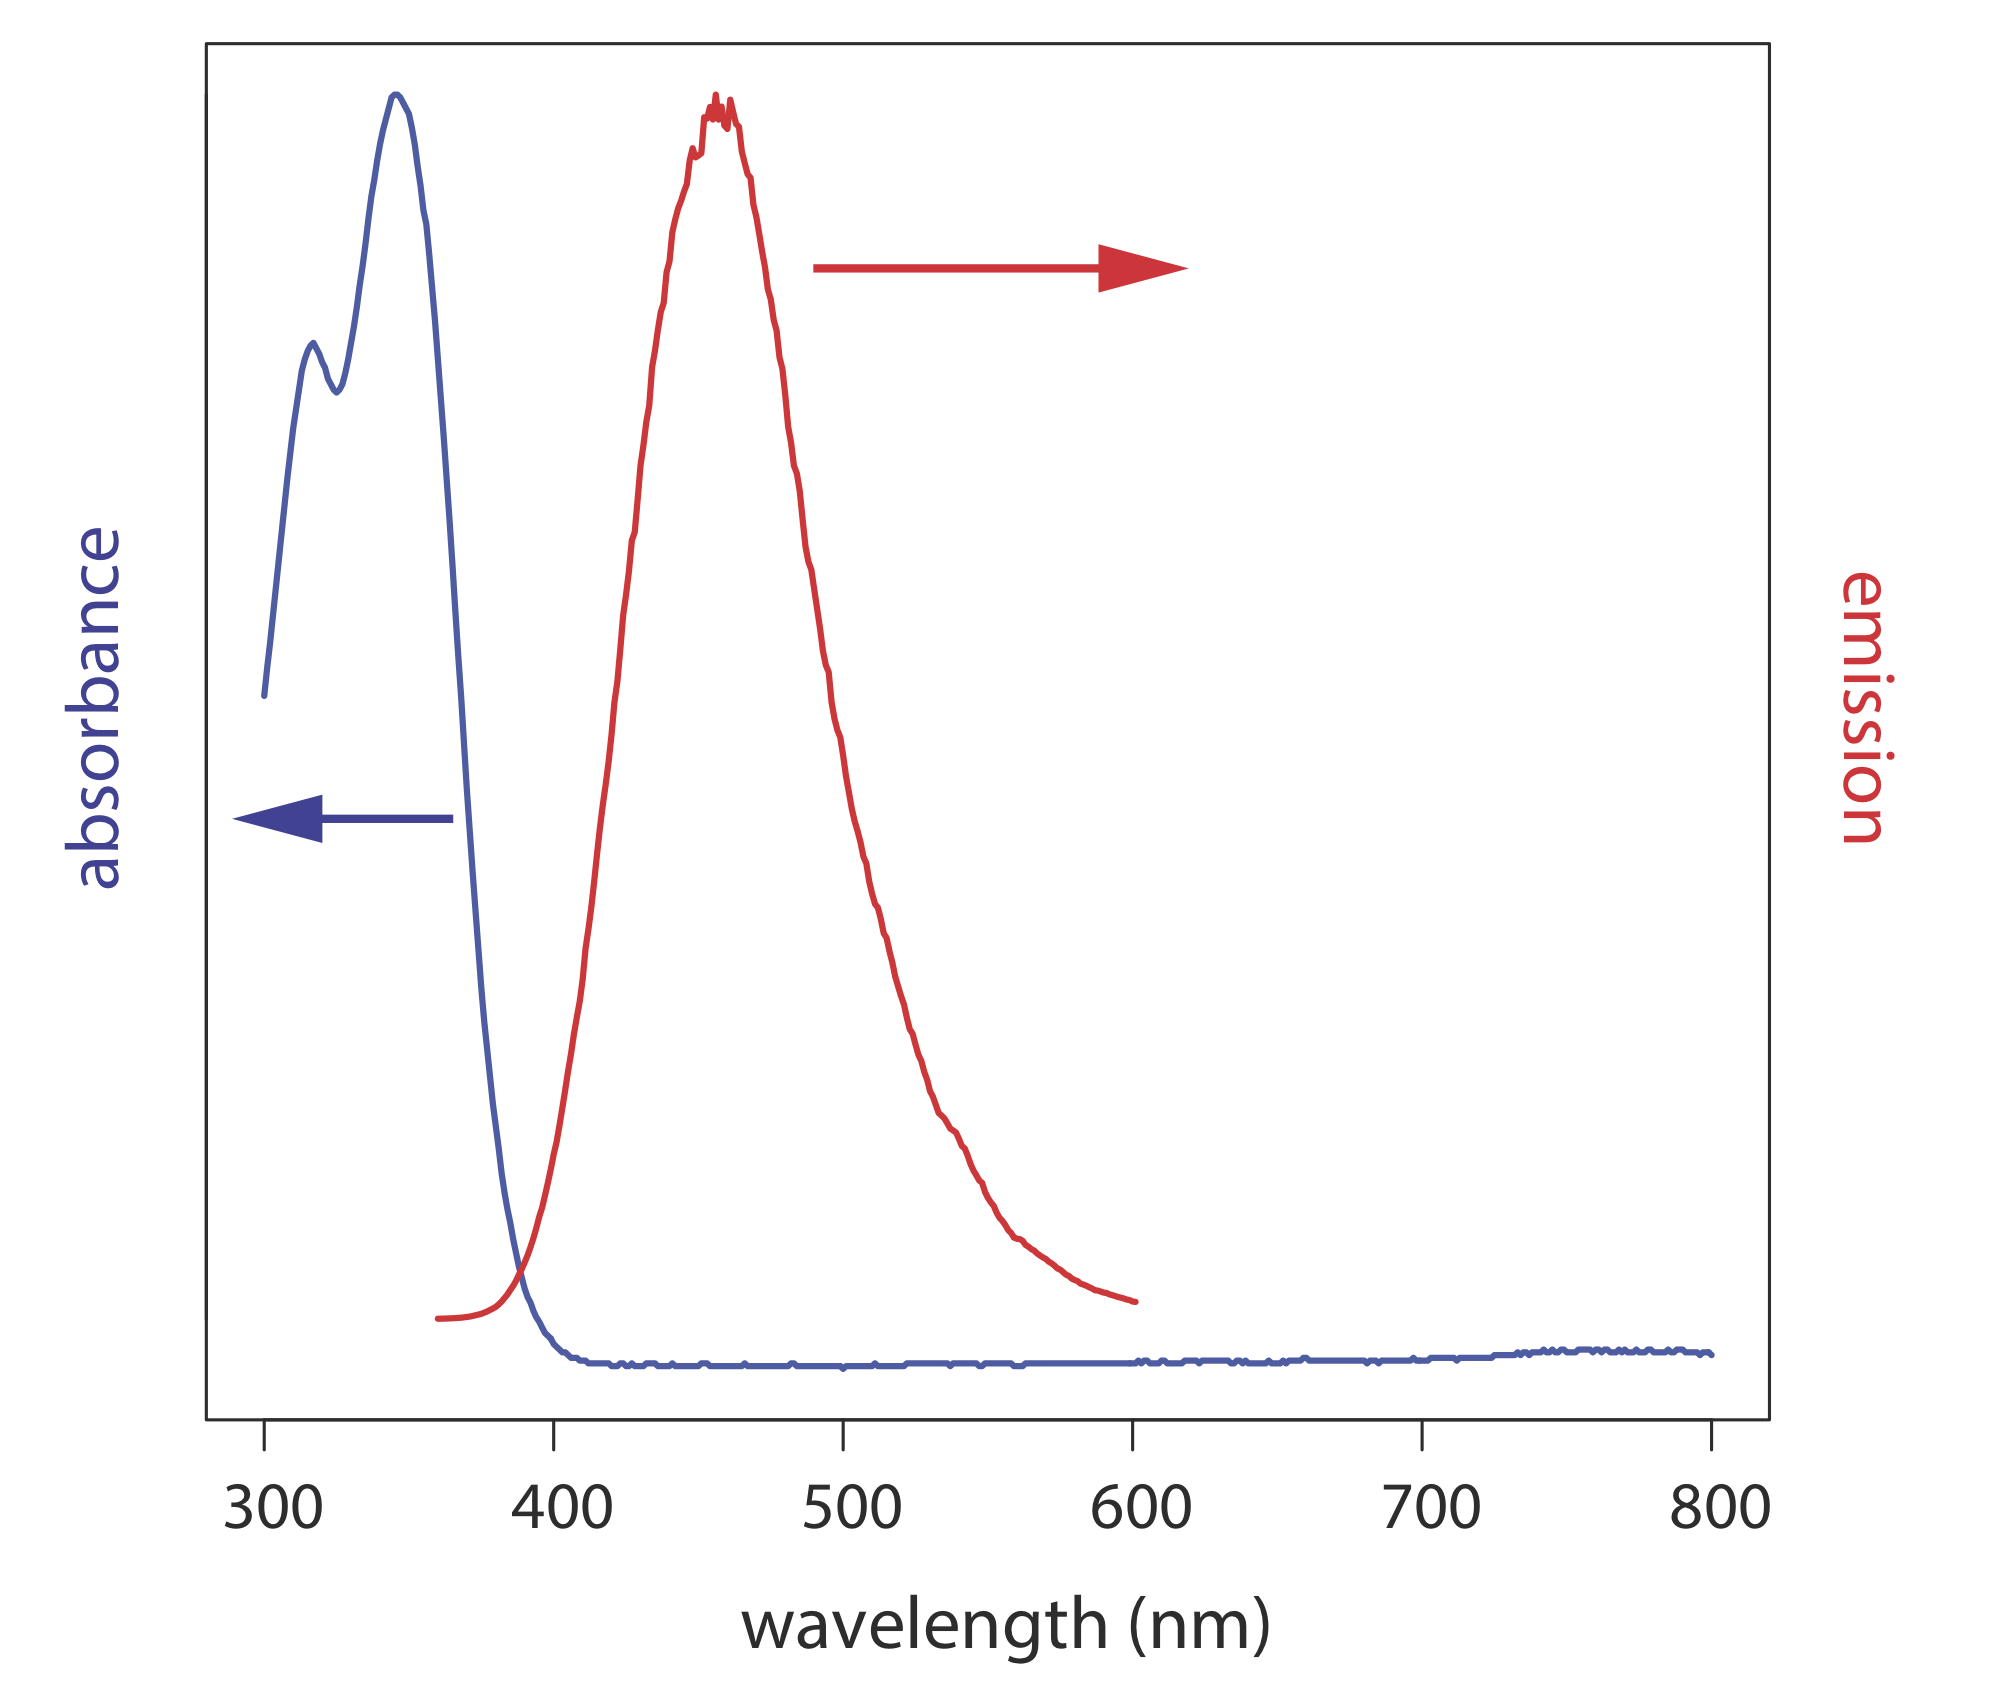 Espectro de absorbancia y espectro de emisión de fluorescencia para quinina en H2SO4 0.05 M.